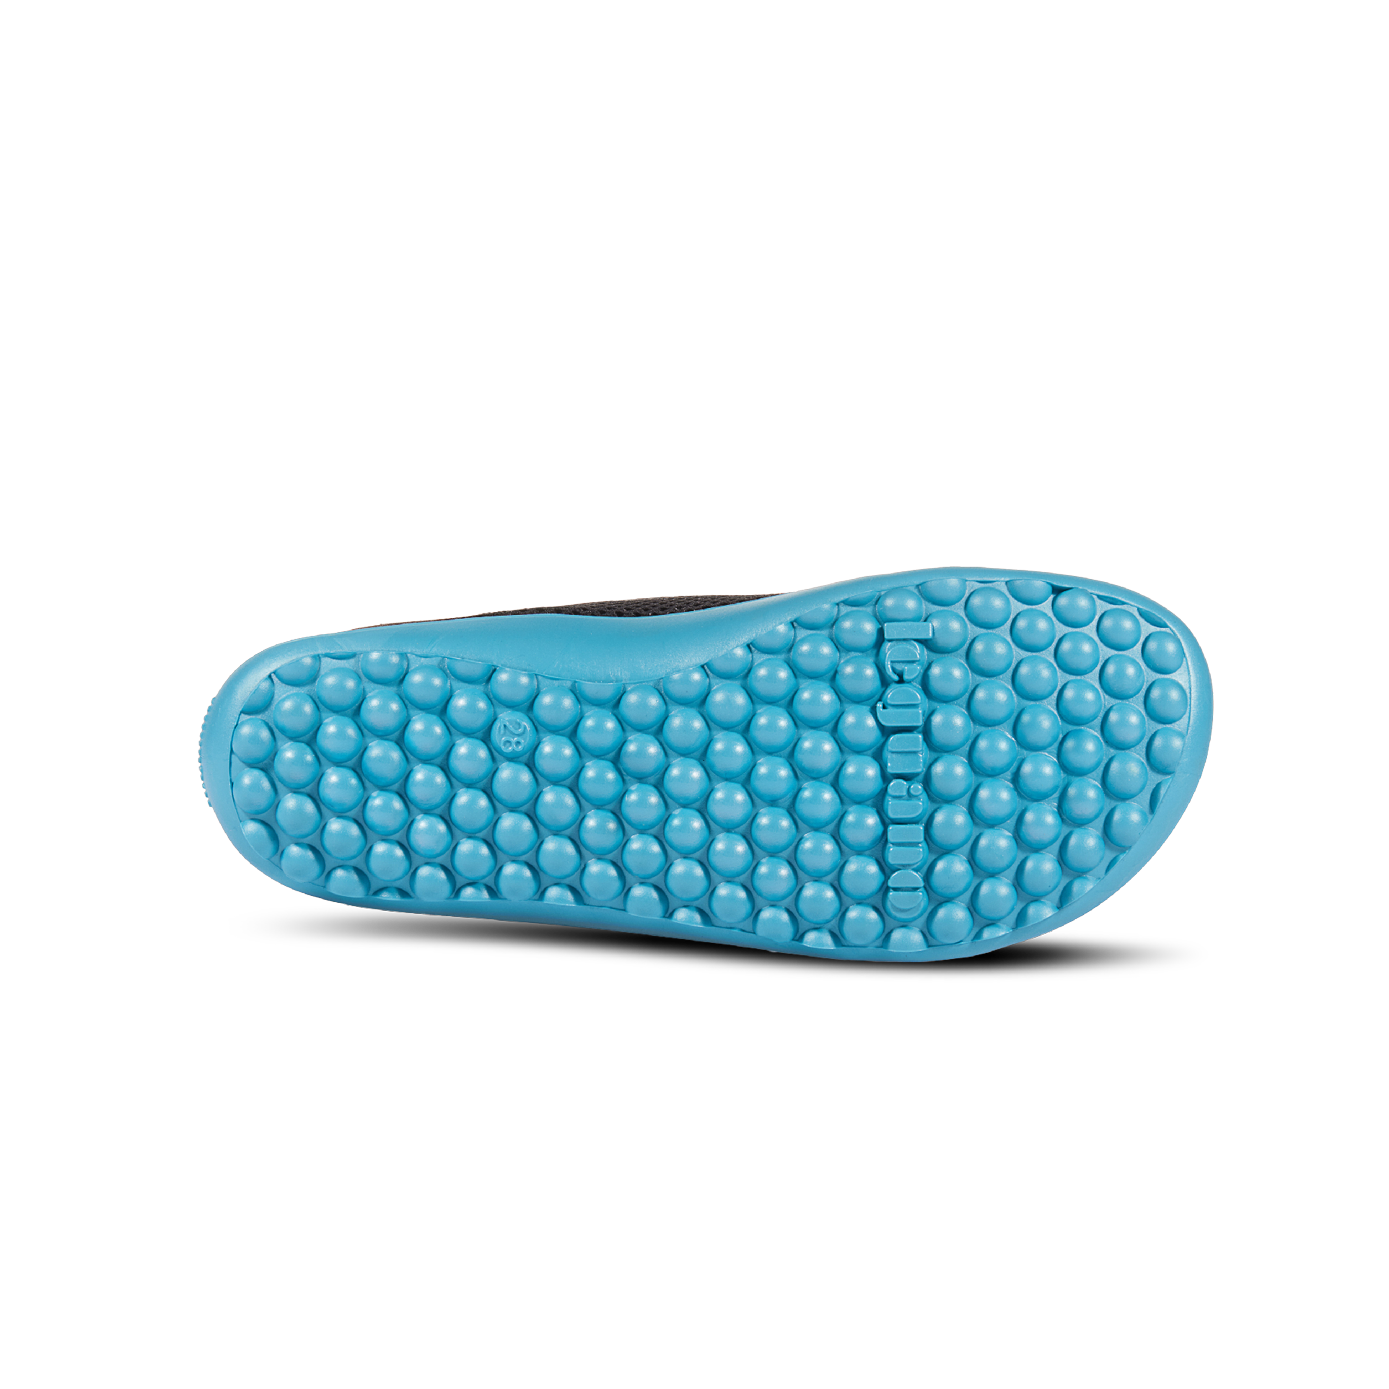 Mærkbare Aktiv barfods sneakers til børn i farven anthracite / blue, saal